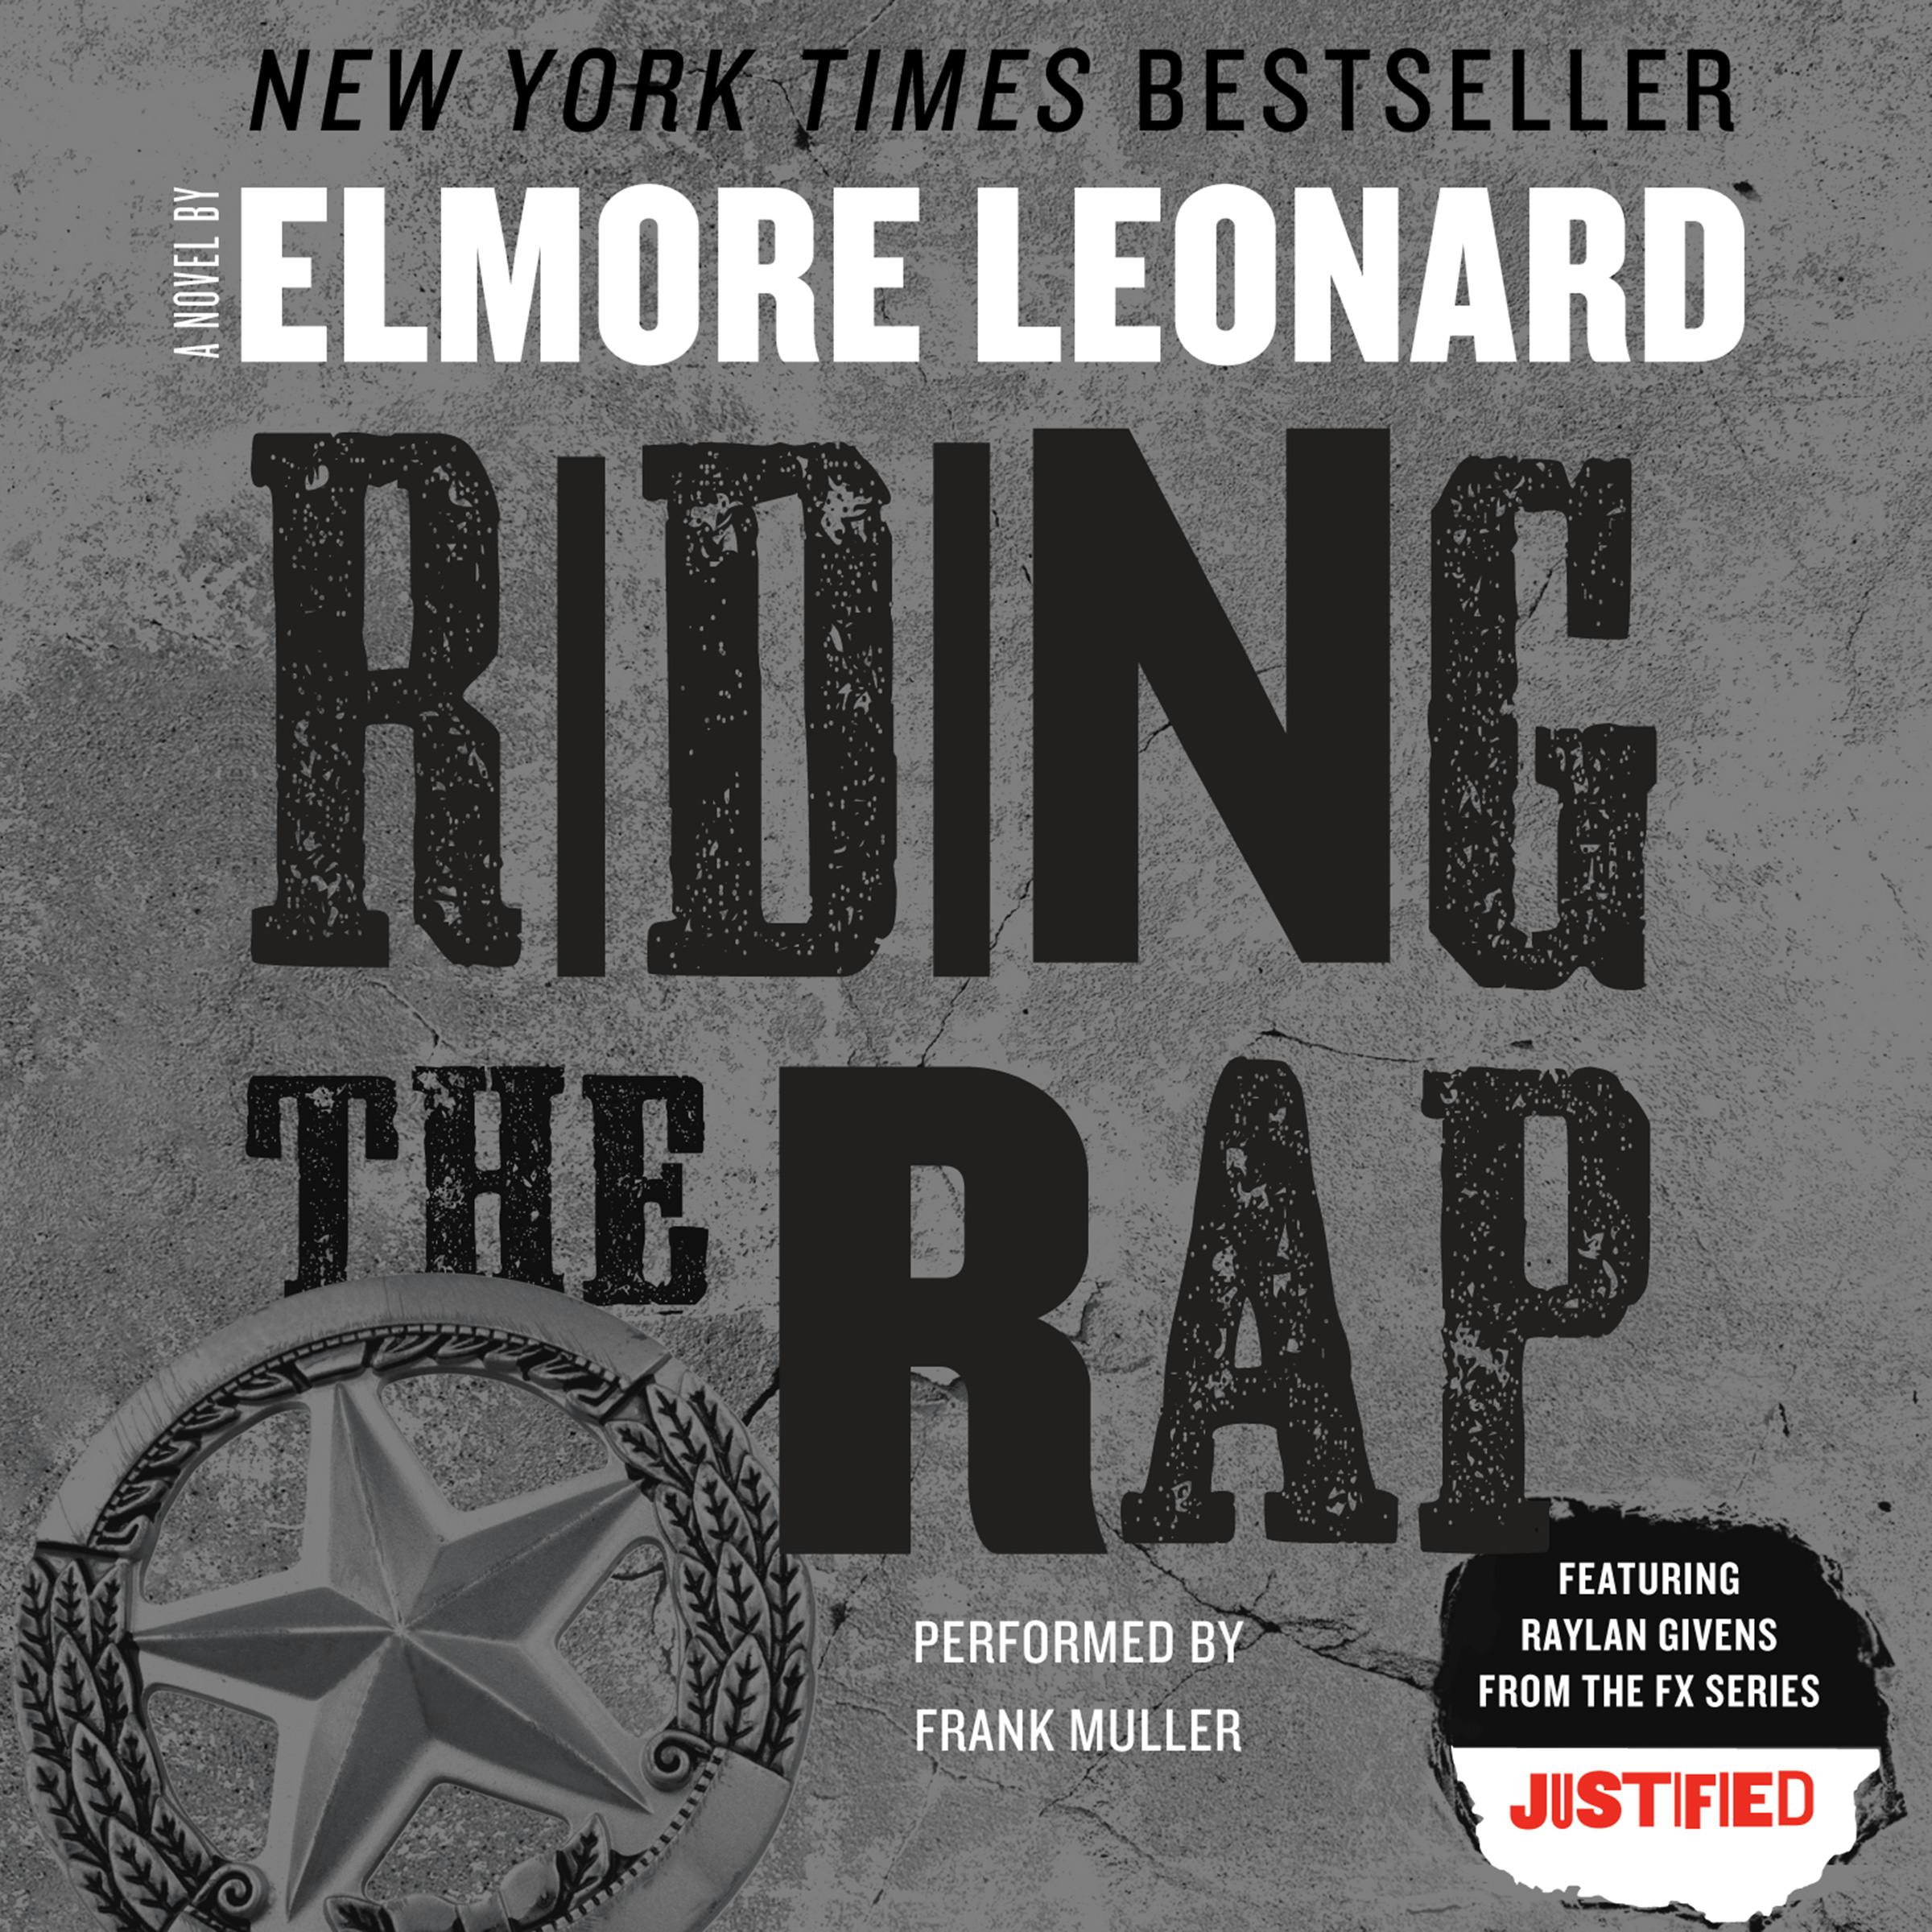 Riding the Rap - Elmore Leonard